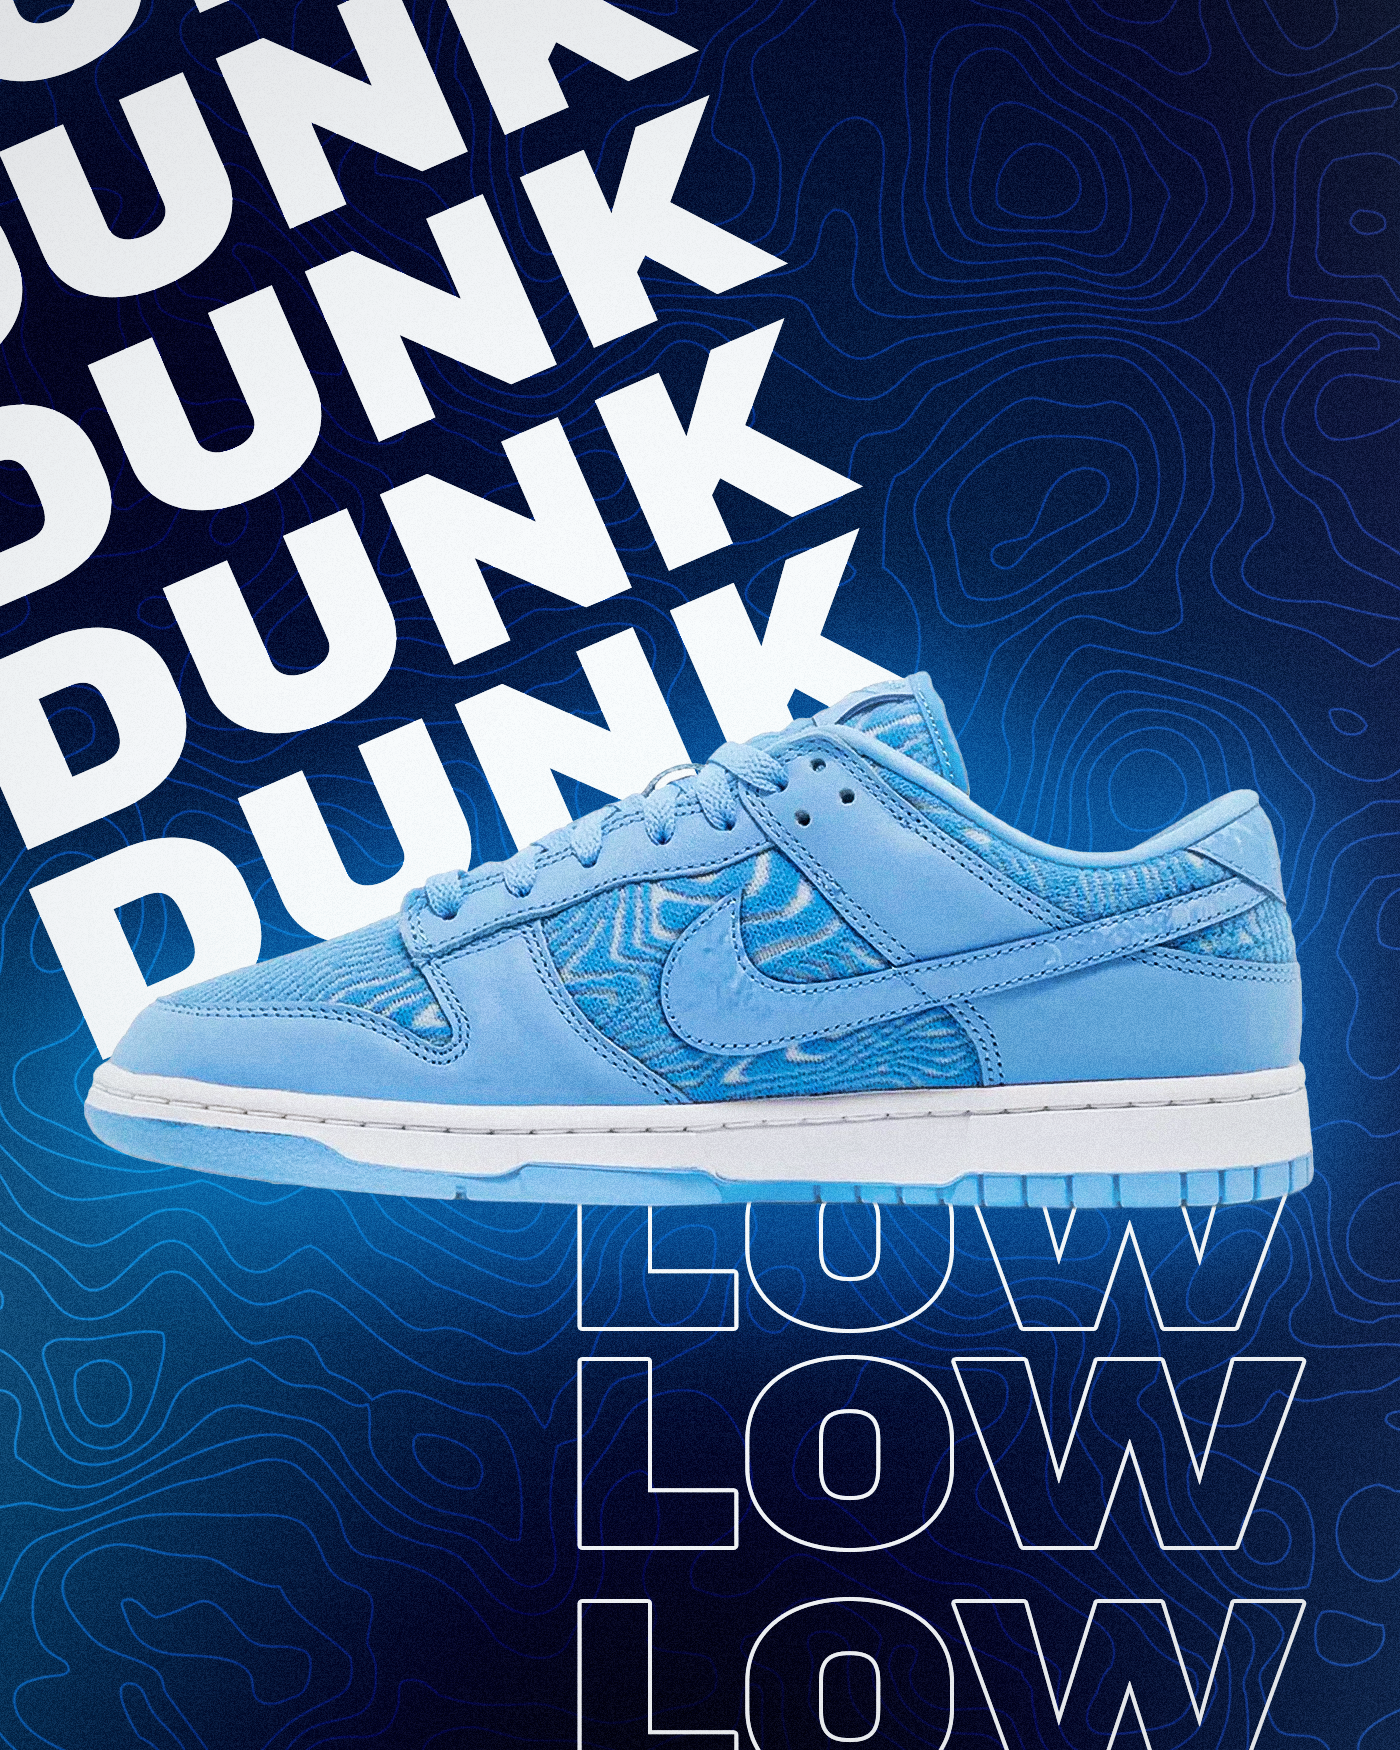 dunk low unc blue graphic